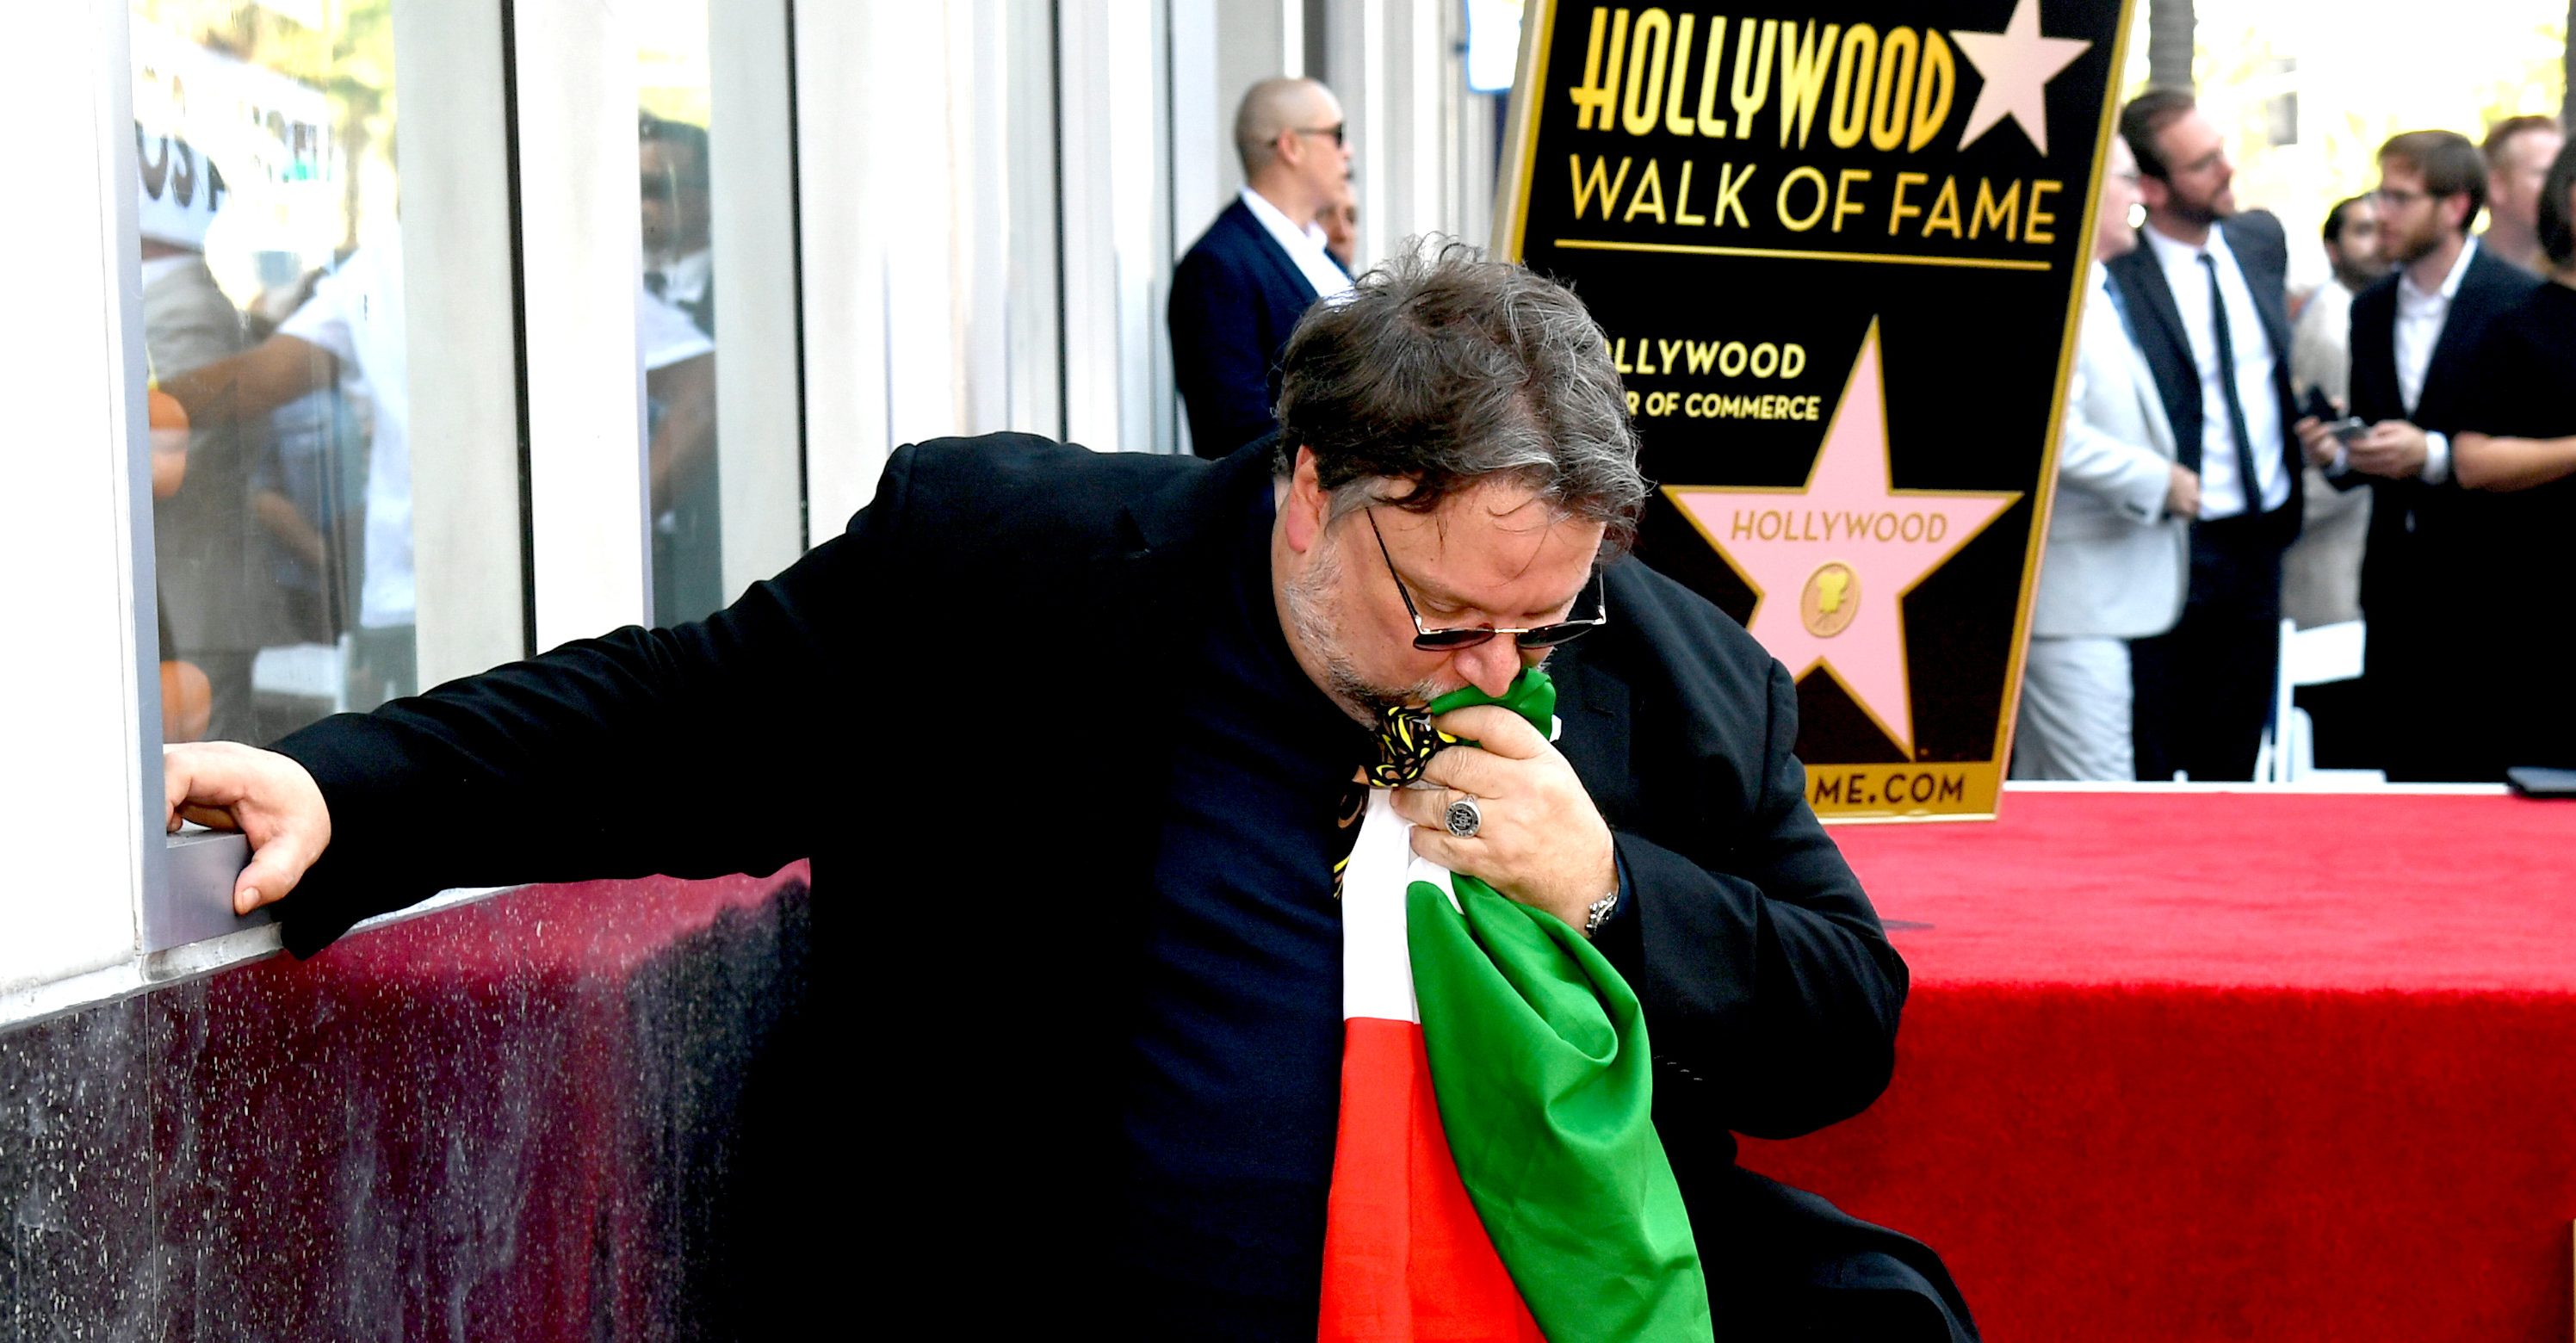 El mensaje de Del Toro para los inmigrantes y la gente ‘rara’